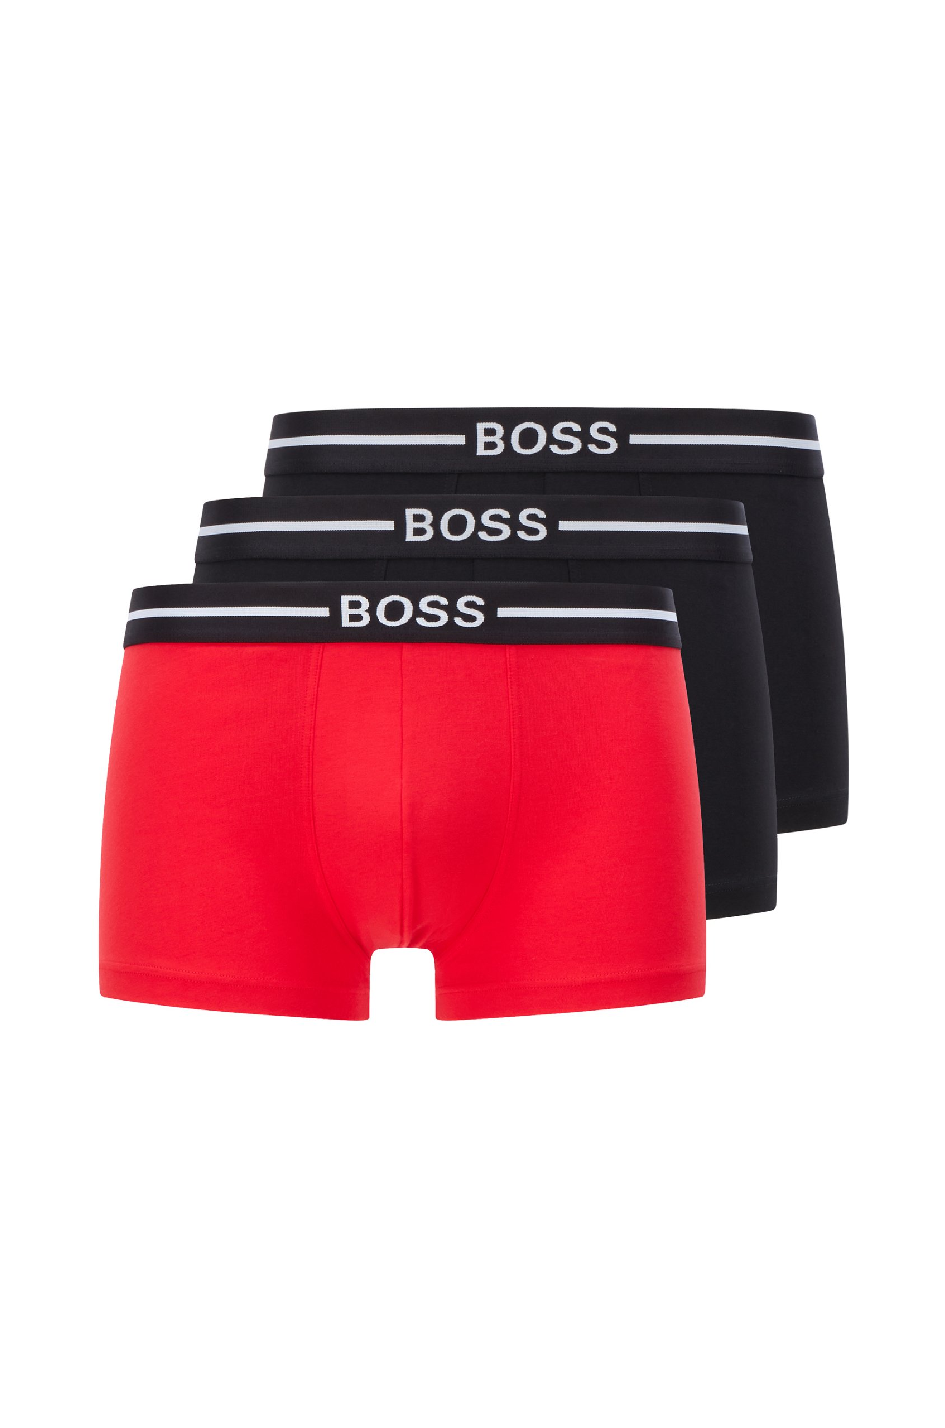 Boss Men's Trunk 3 Pack